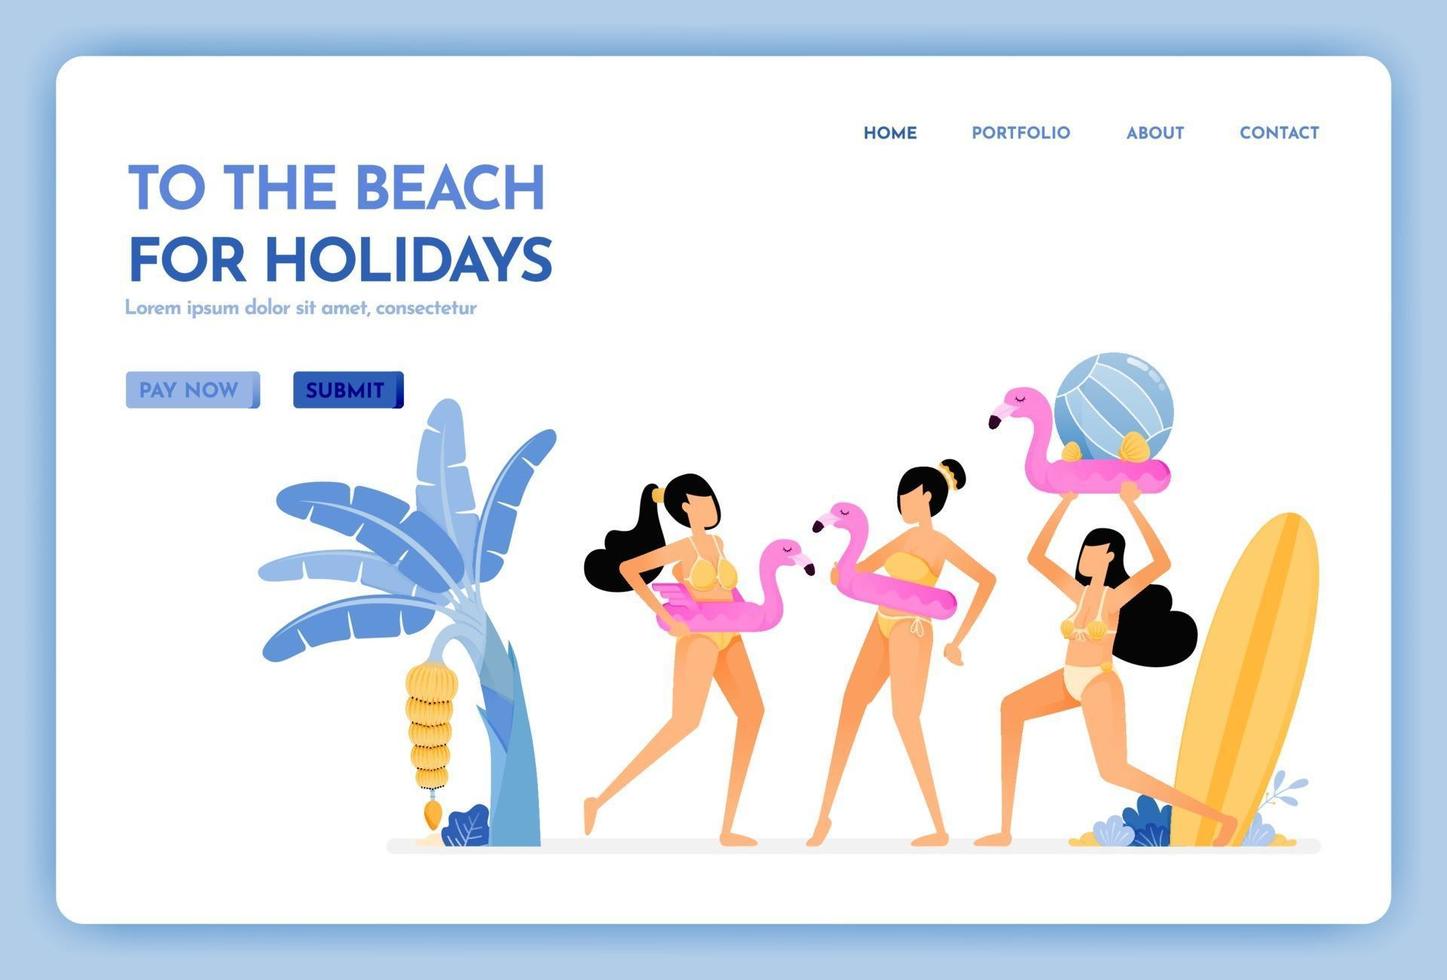 sito web di viaggi con il tema andare in spiaggia per le vacanze, donne che indossano bikini e si divertono a nuotare il disegno vettoriale può essere utilizzato per poster banner pubblicitari sito web web mobile marketing volantino